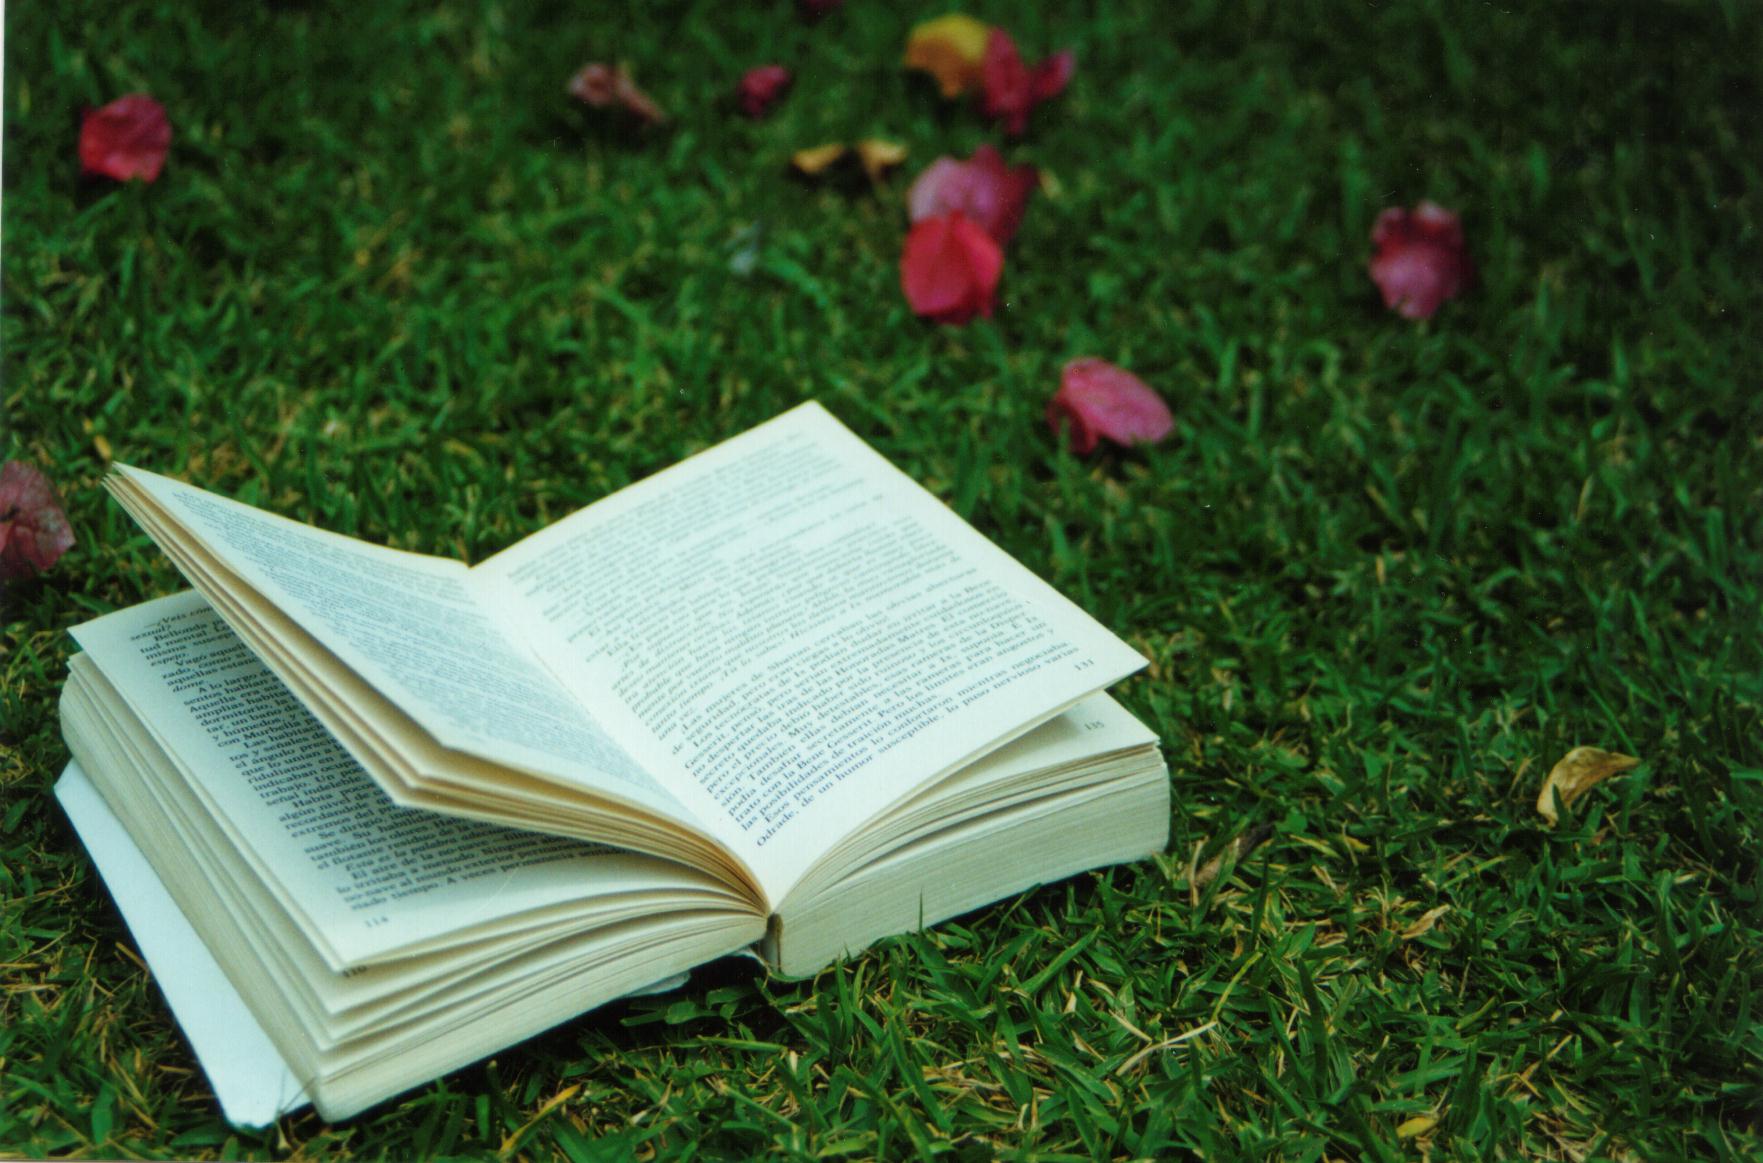 open book on grass